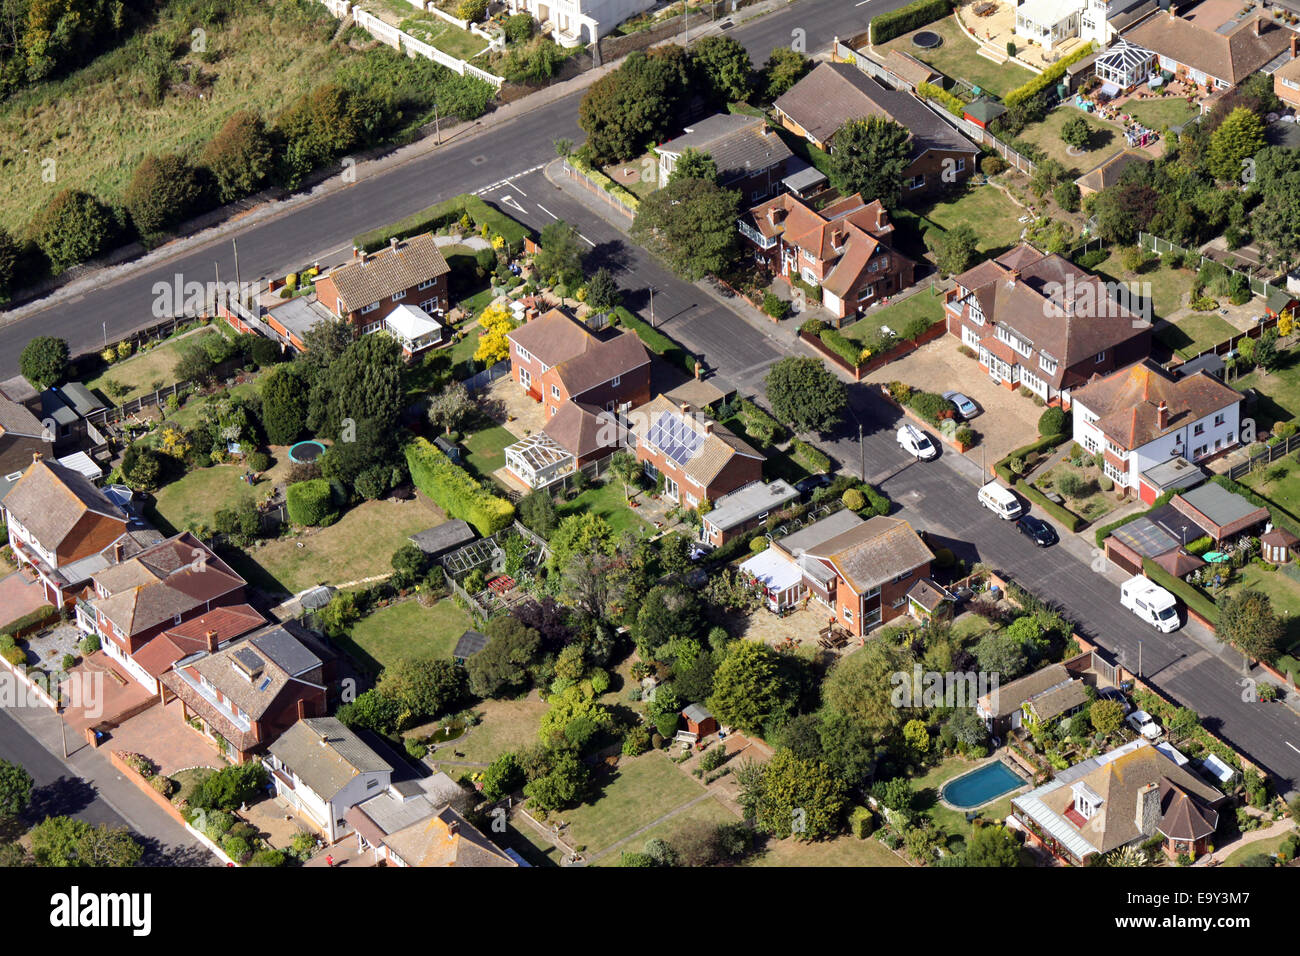 Vista aérea de casas típicas en un barrio de viviendas en el REINO UNIDO Foto de stock